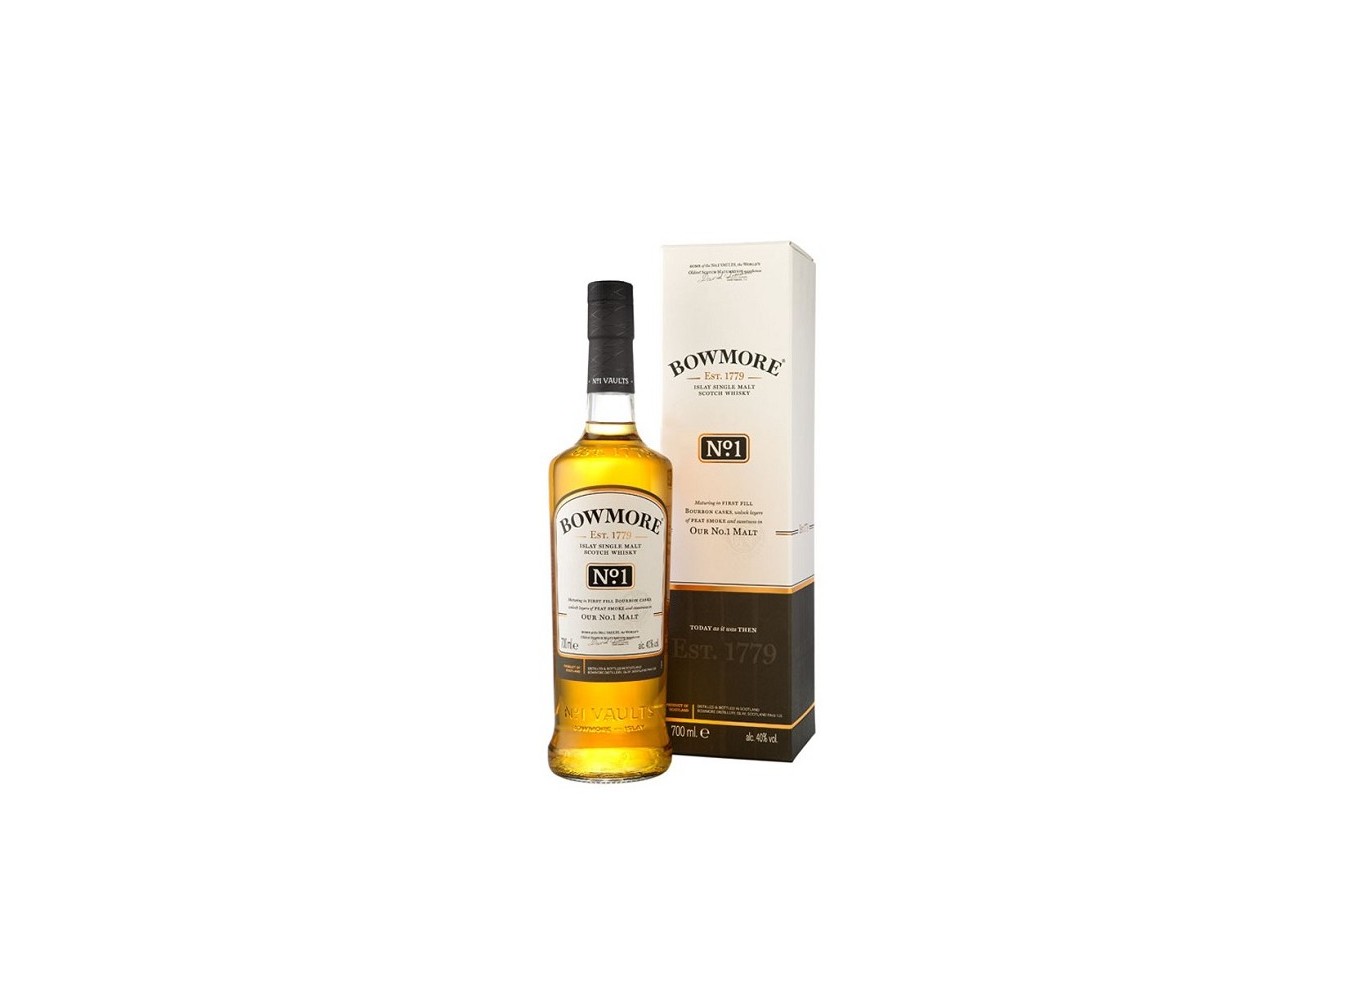 Whisky Bowmore Nº1